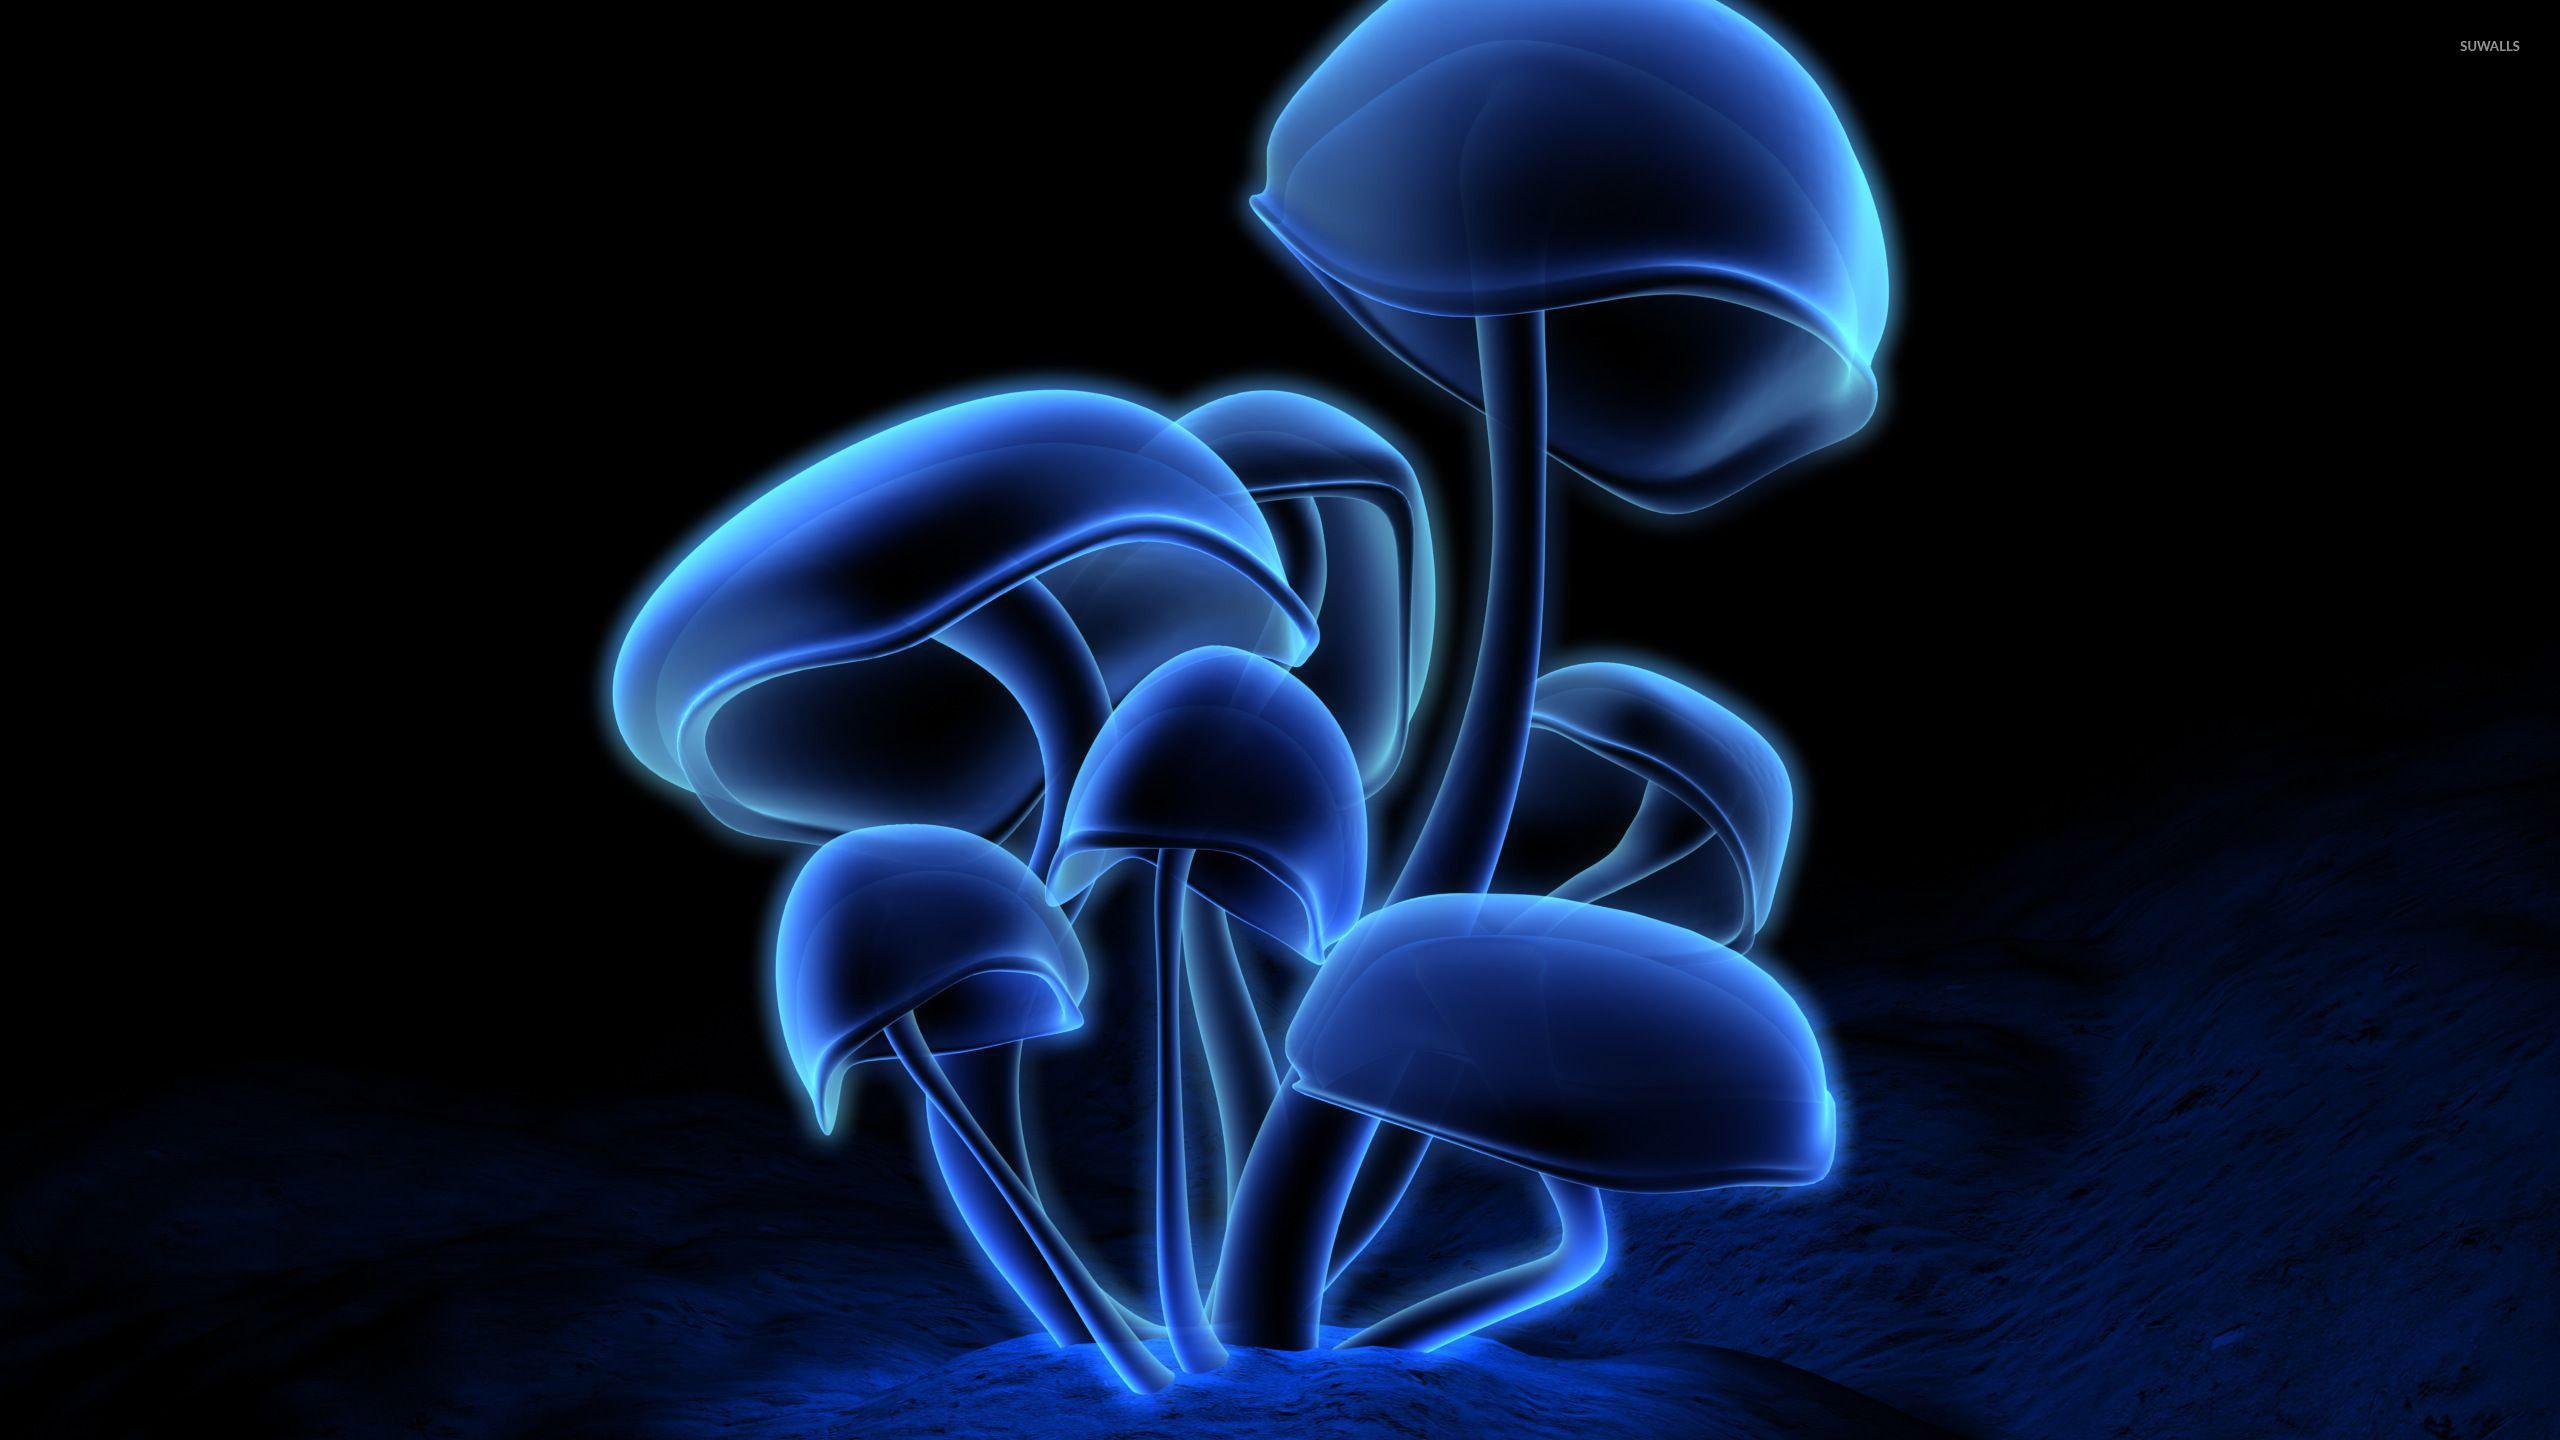 Hình nền 2560x1440 Neon Mushroom - Hình nền nghệ thuật số